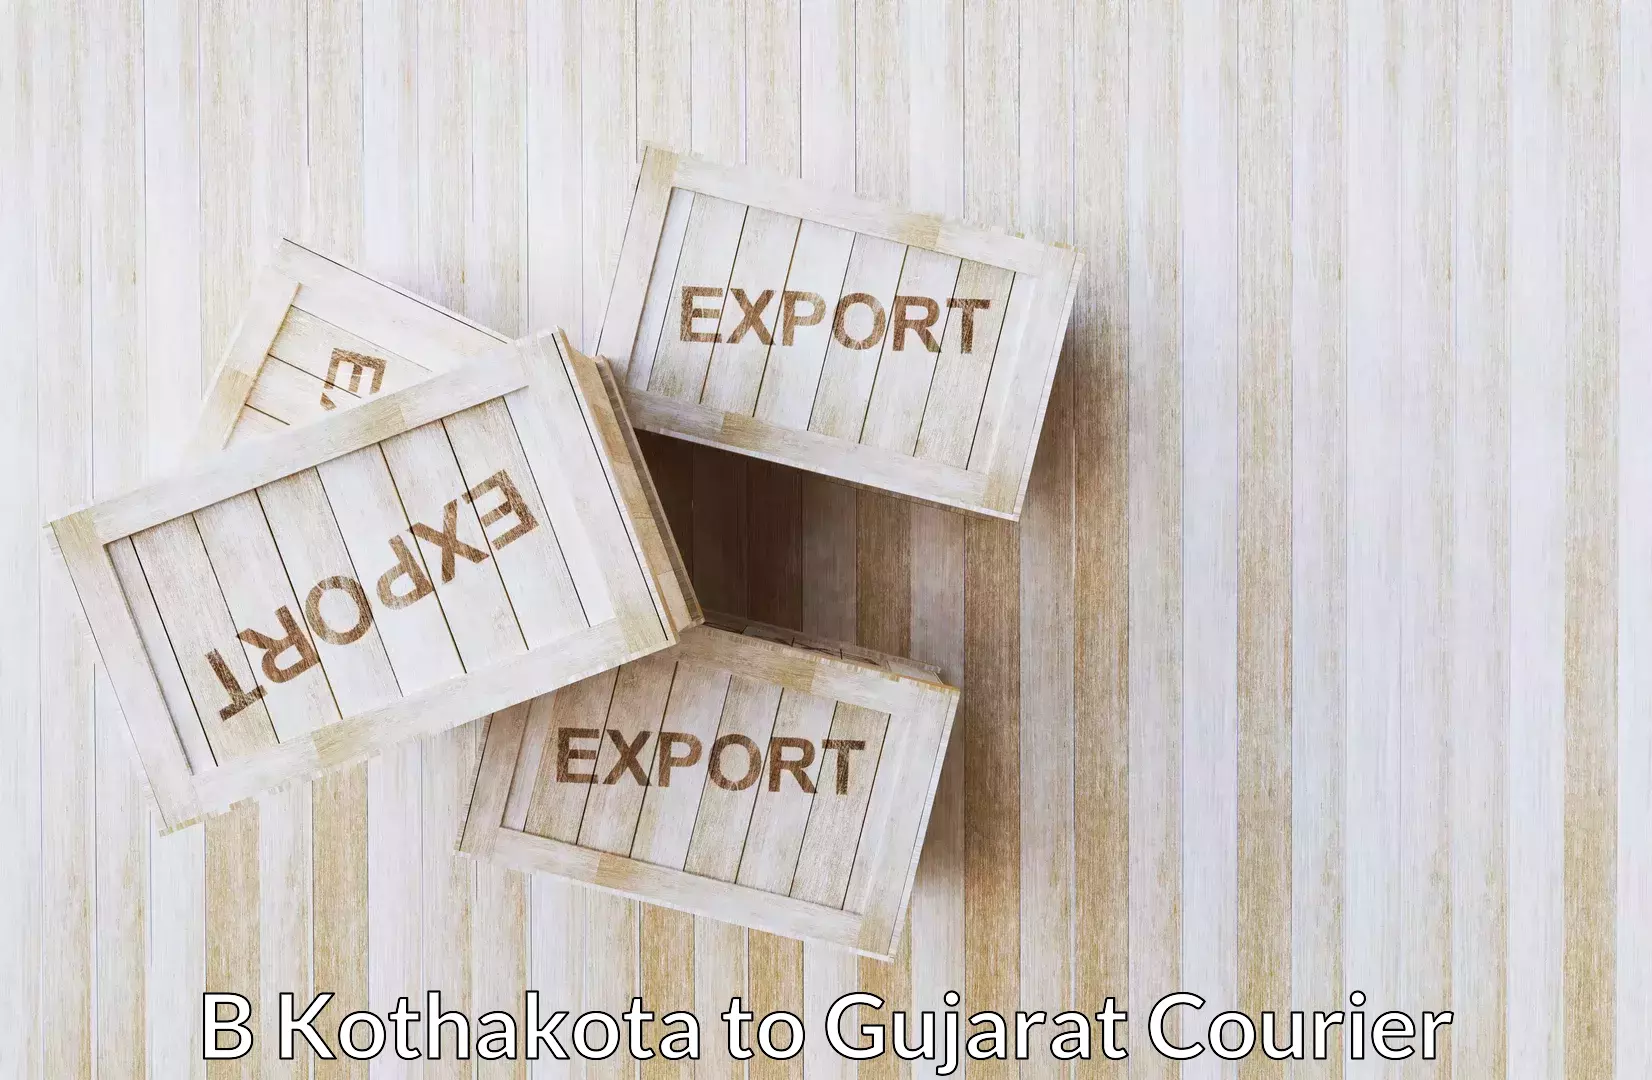 Moving and storage services B Kothakota to Gujarat